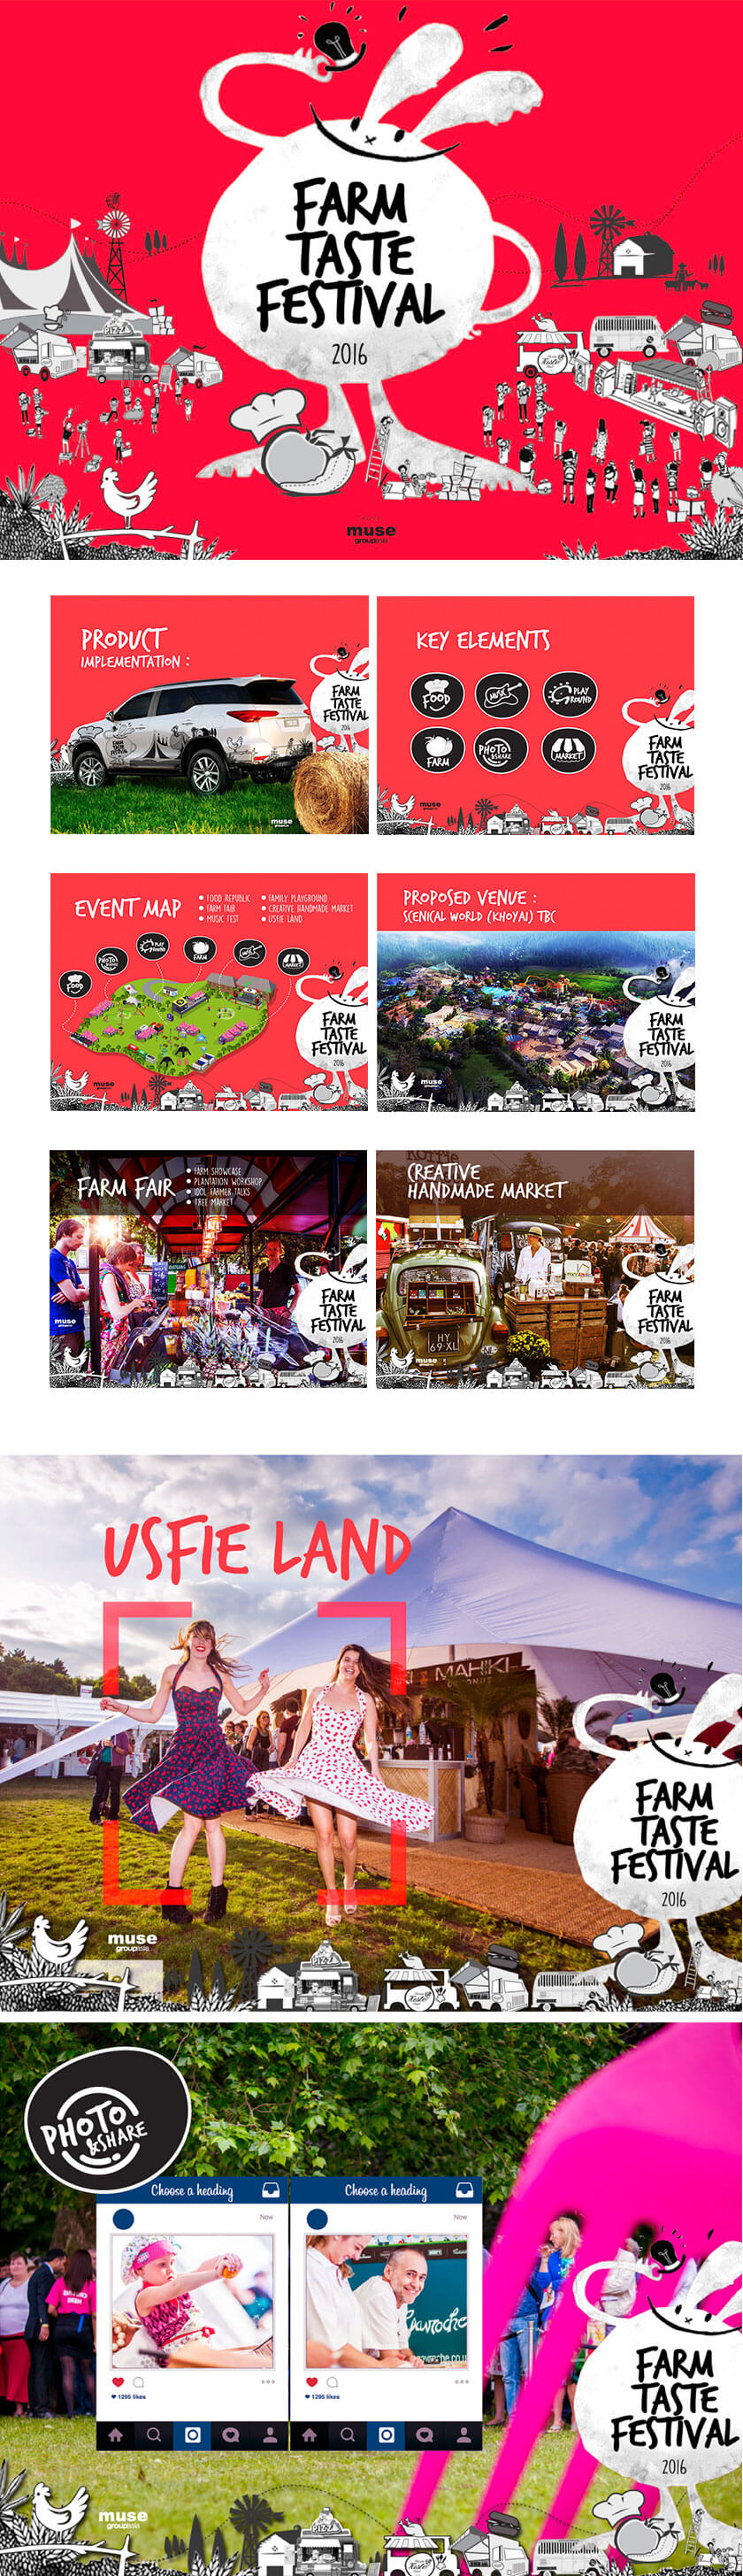 ออกแบบ Farm-Taste-festival | MeDee - บริษัทรับทำเว็บไซต์ กราฟฟิกดีไซน์